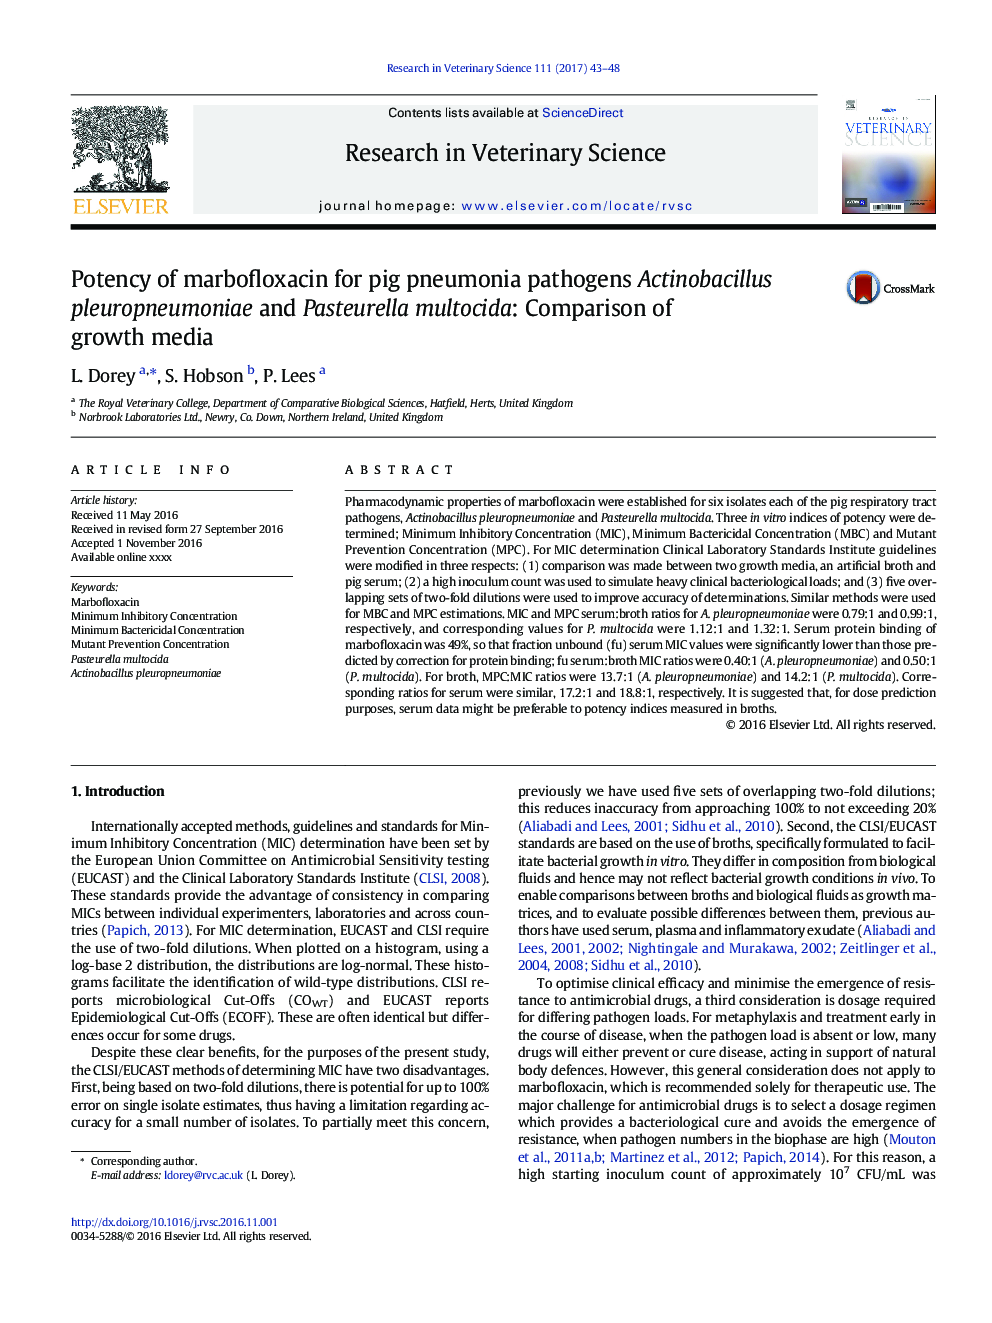 Potency of marbofloxacin for pig pneumonia pathogens Actinobacillus pleuropneumoniae and Pasteurella multocida: Comparison of growth media